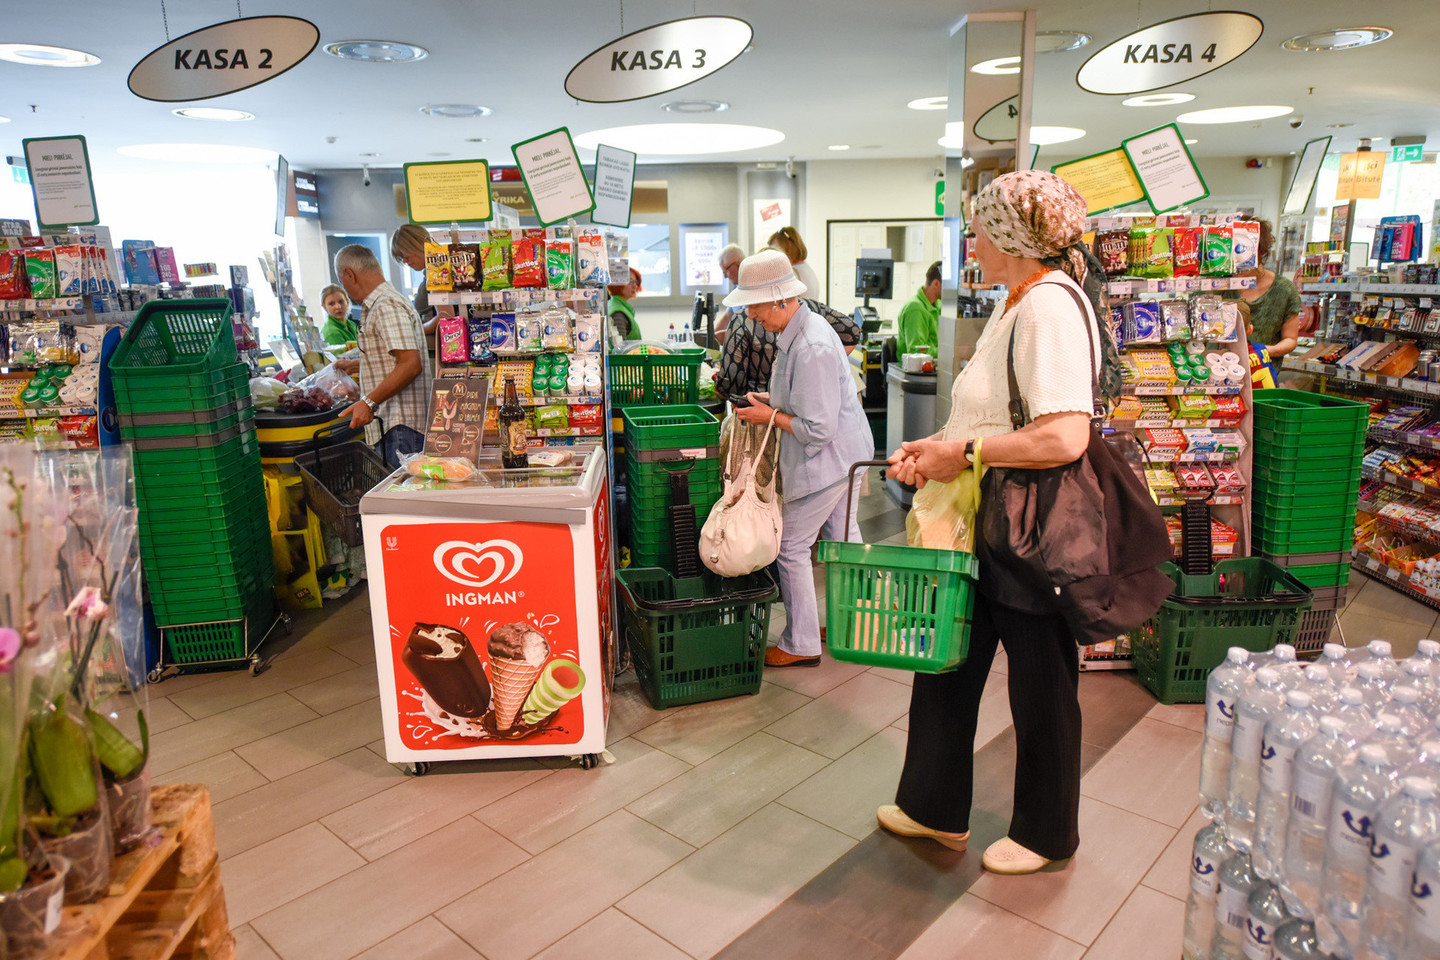 Parduotuvės – apytuštės, o jų atsakas į vartotojų boikotą – didžiulės nuolaidos.<br>D.Umbraso nuotr.